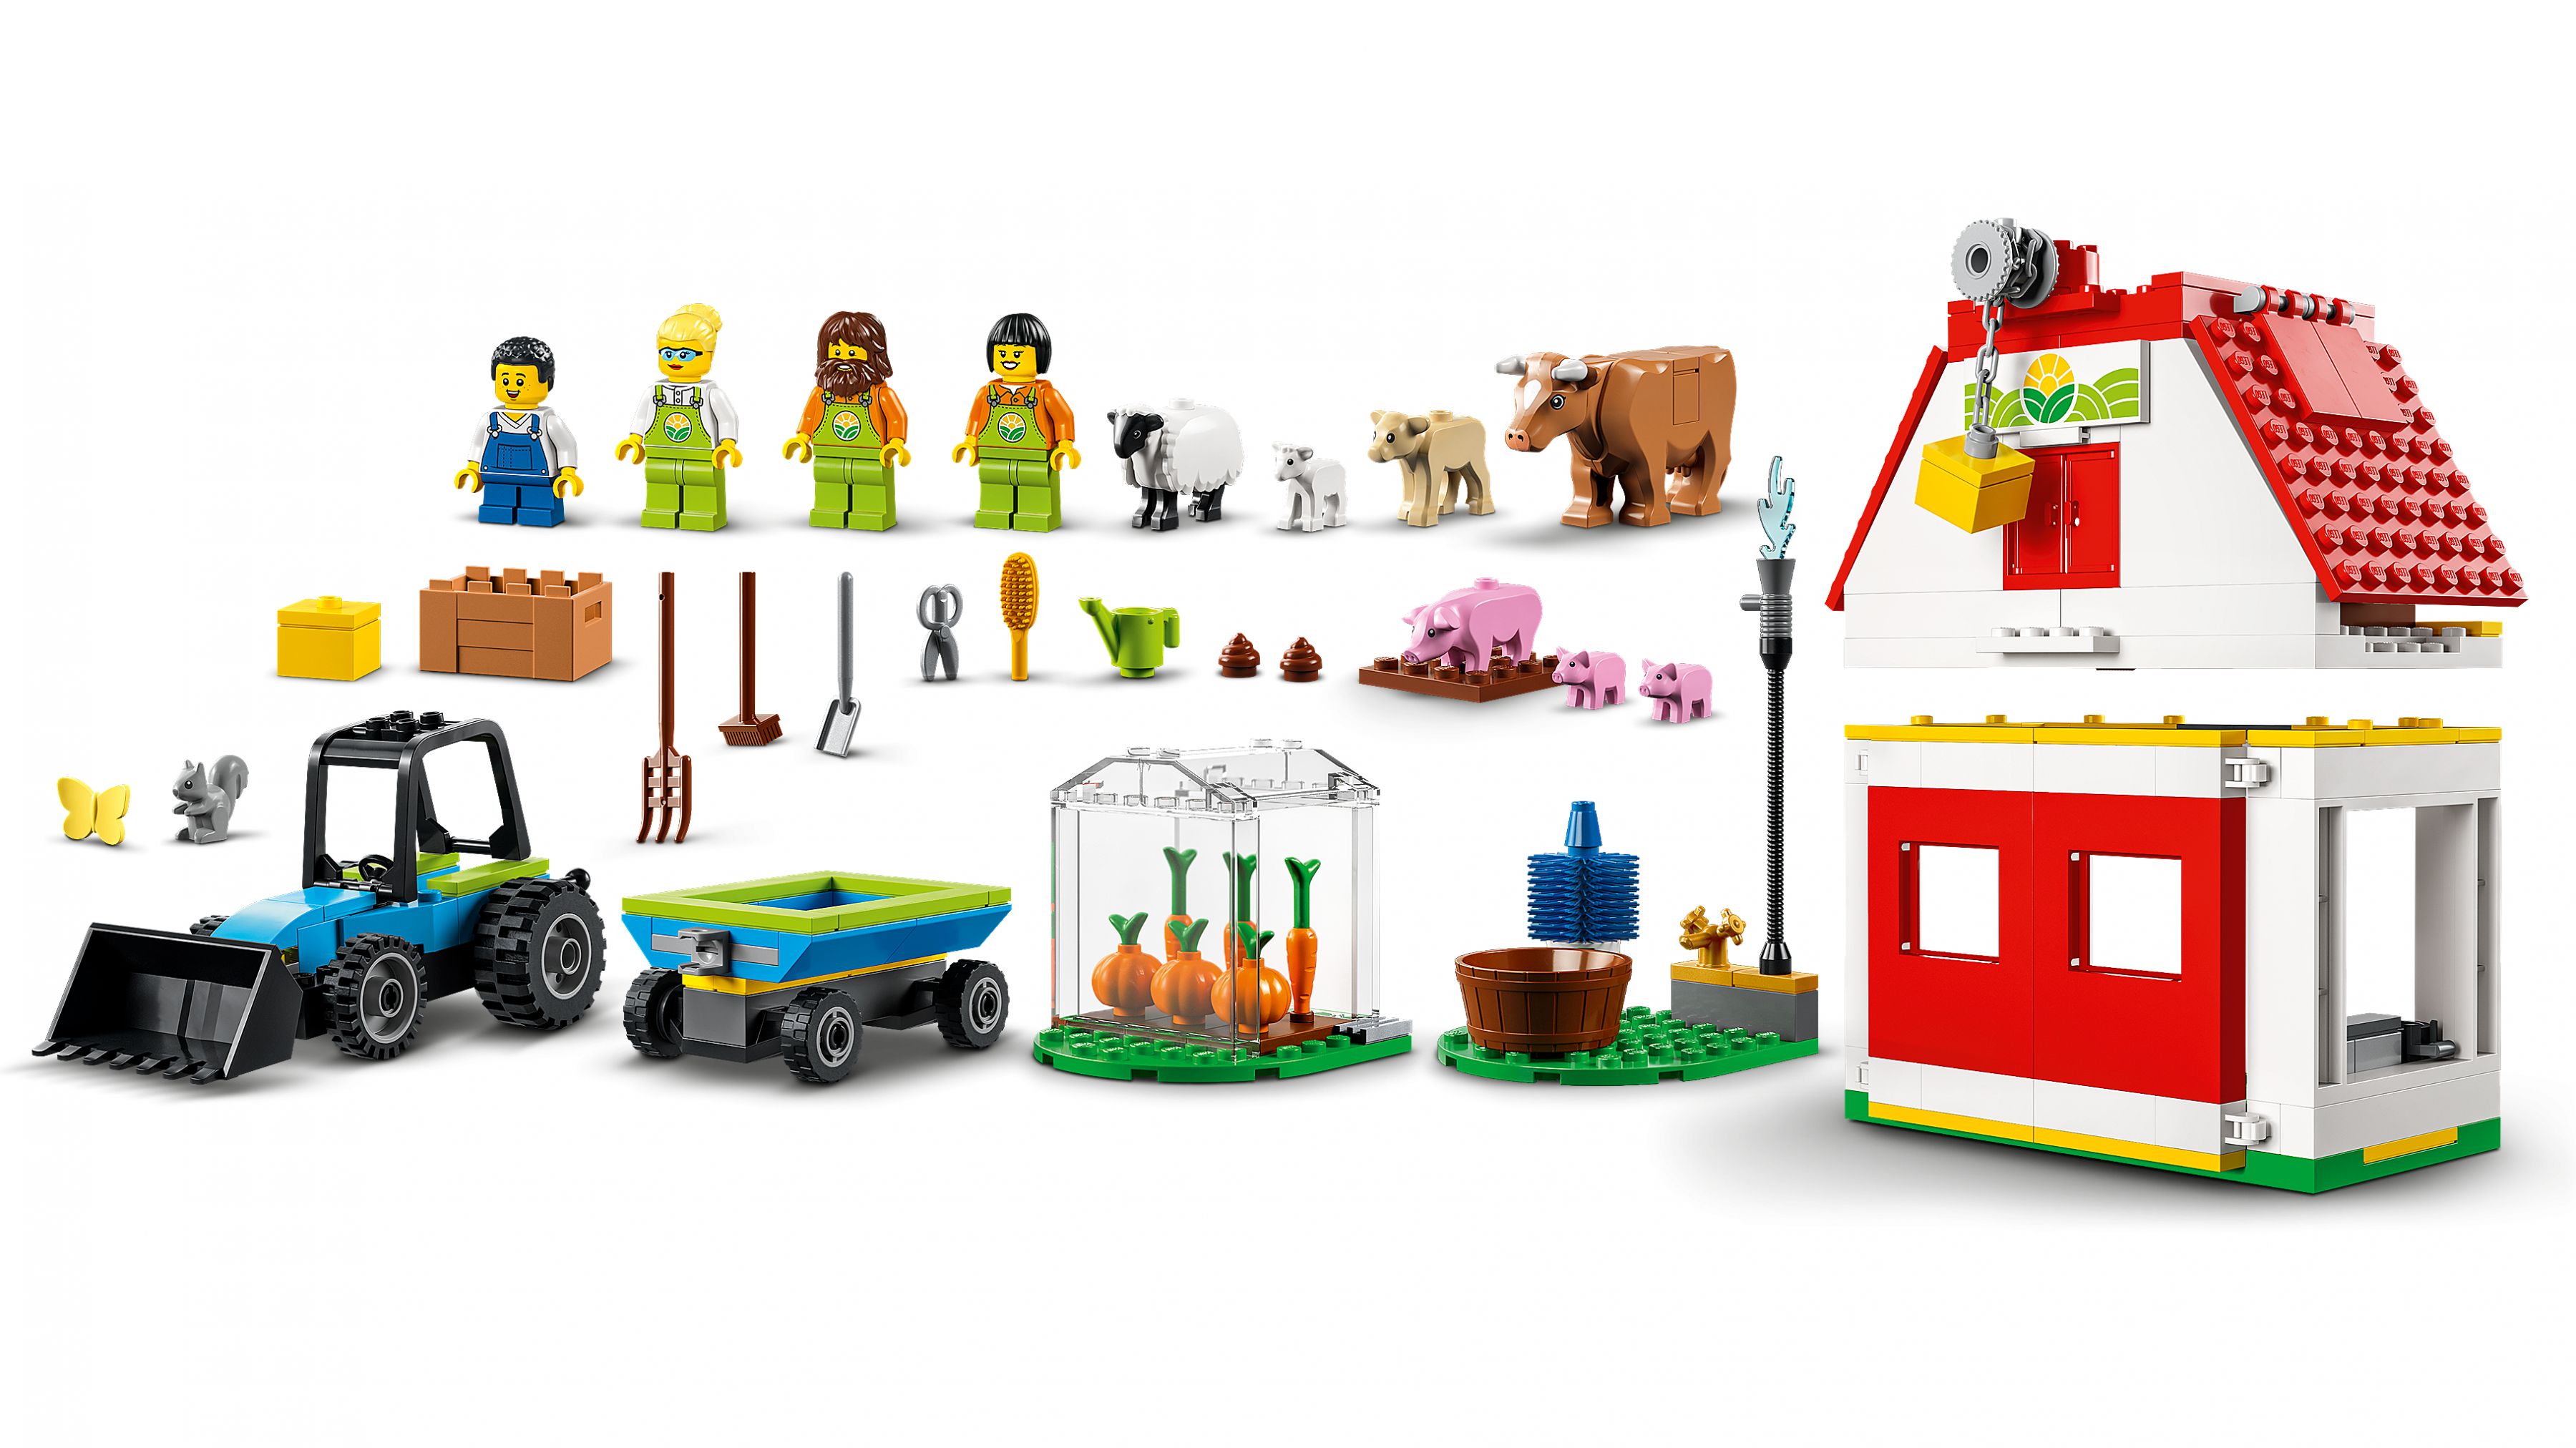 LEGO City 60346 Bauernhof mit Tieren LEGO_60346_WEB_SEC05_NOBG.jpg